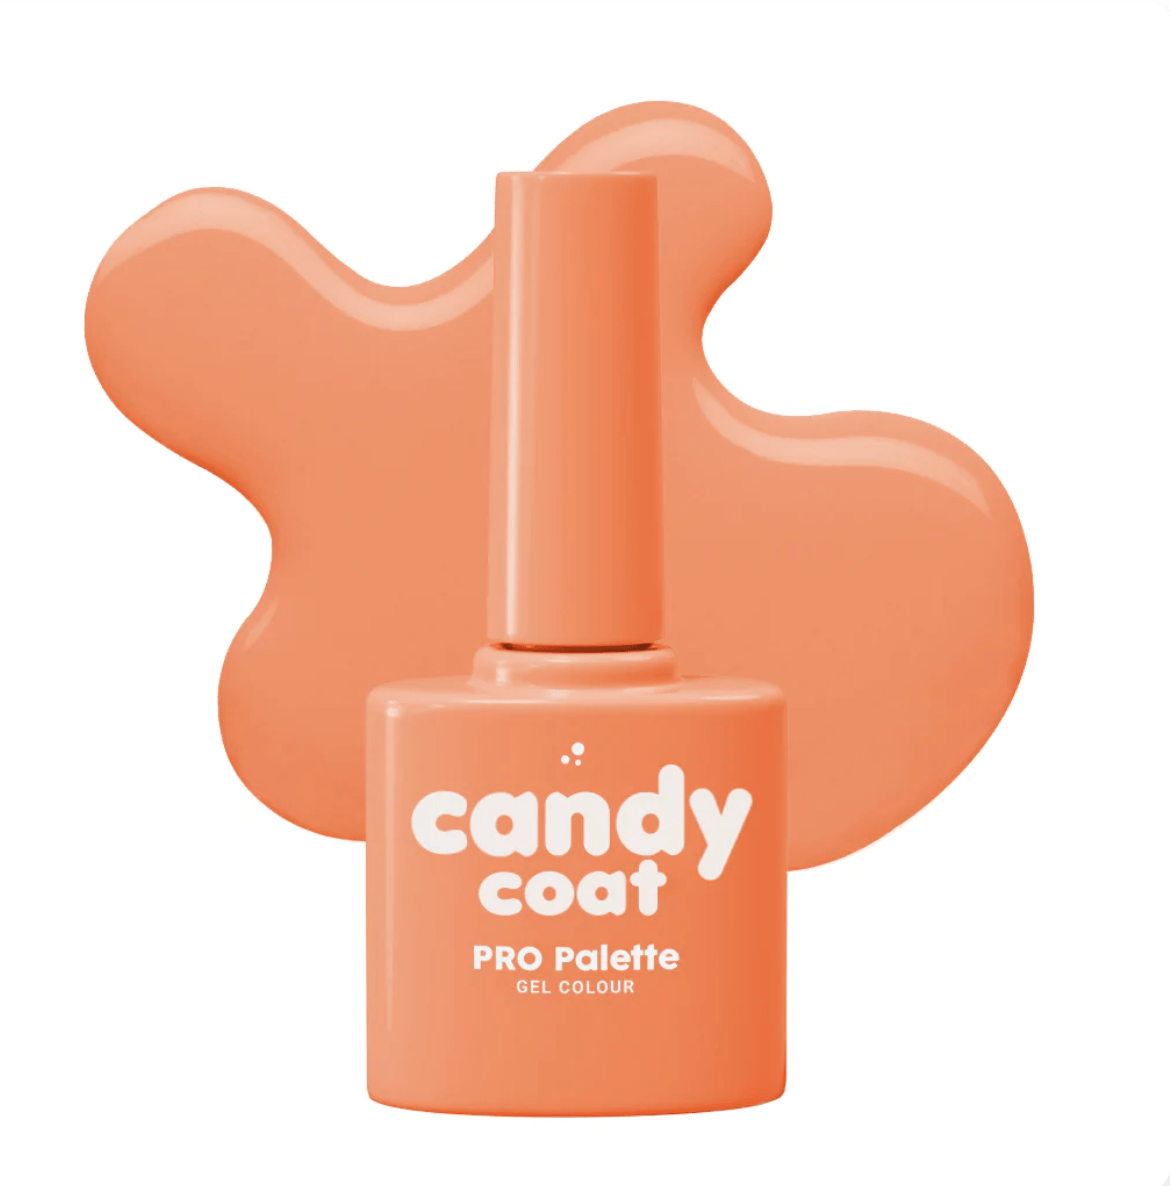 Candy Coat PRO Palette 207 Lulu